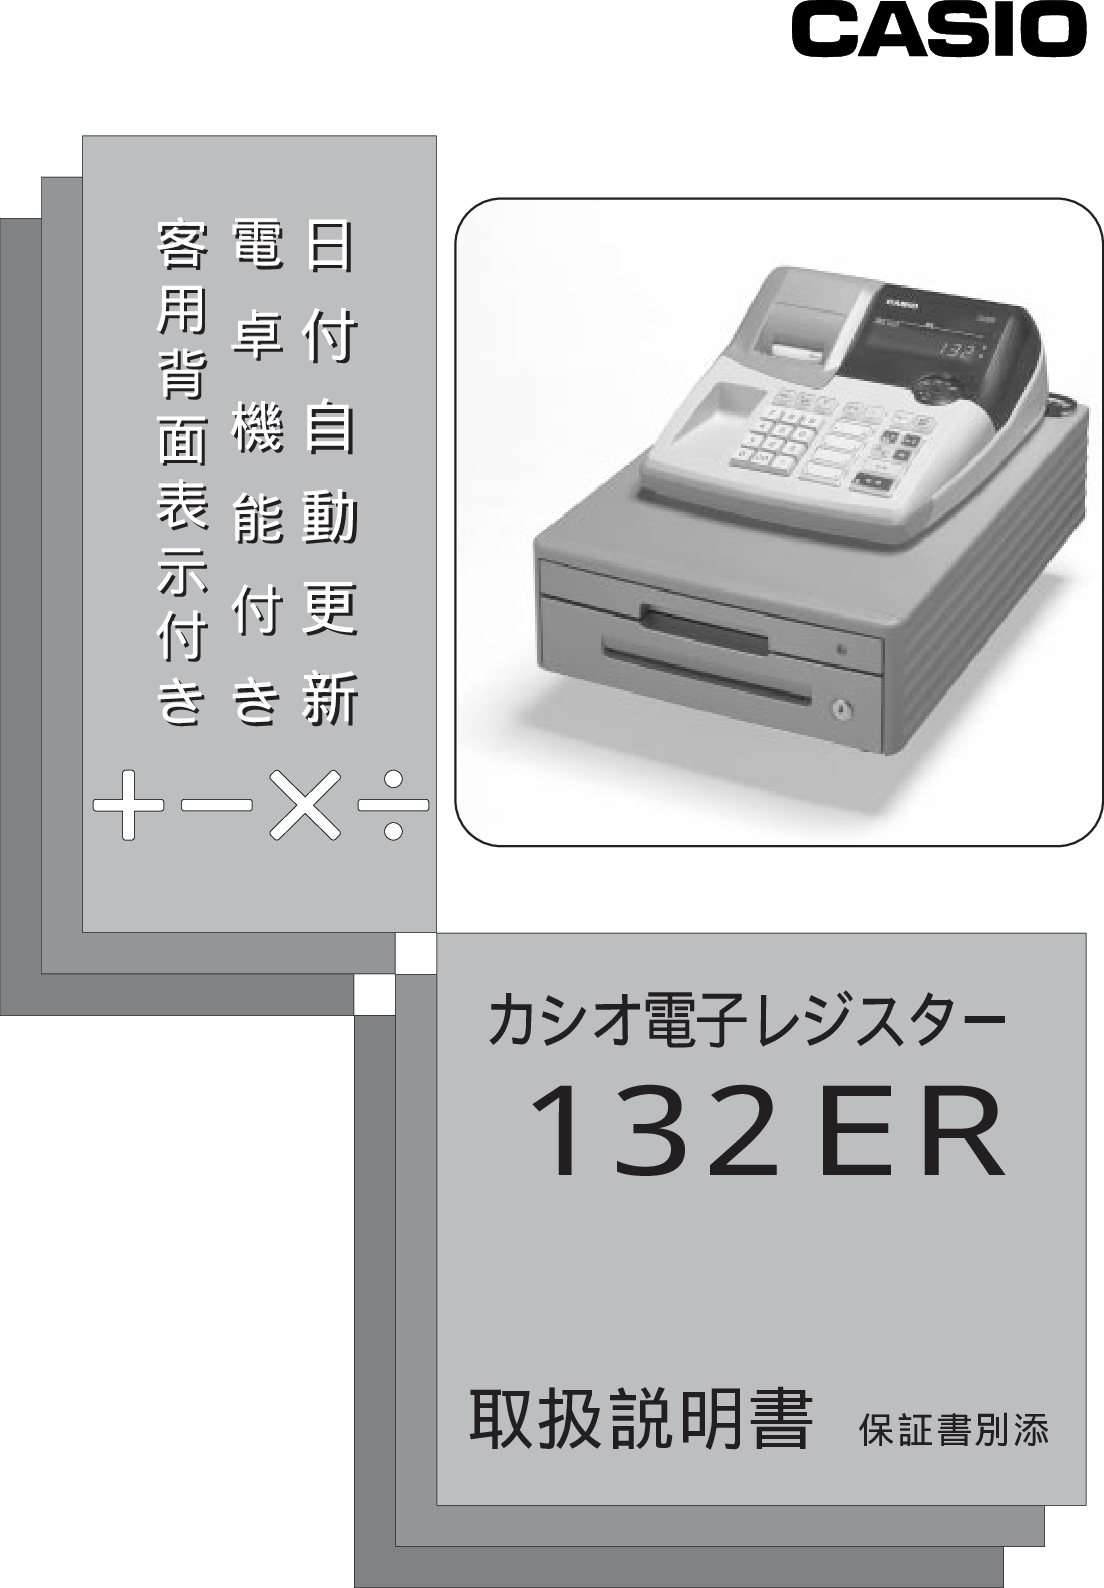 業務用20セット) カシオ CASIO レジスター用インクロール IR-93B 黒 通販